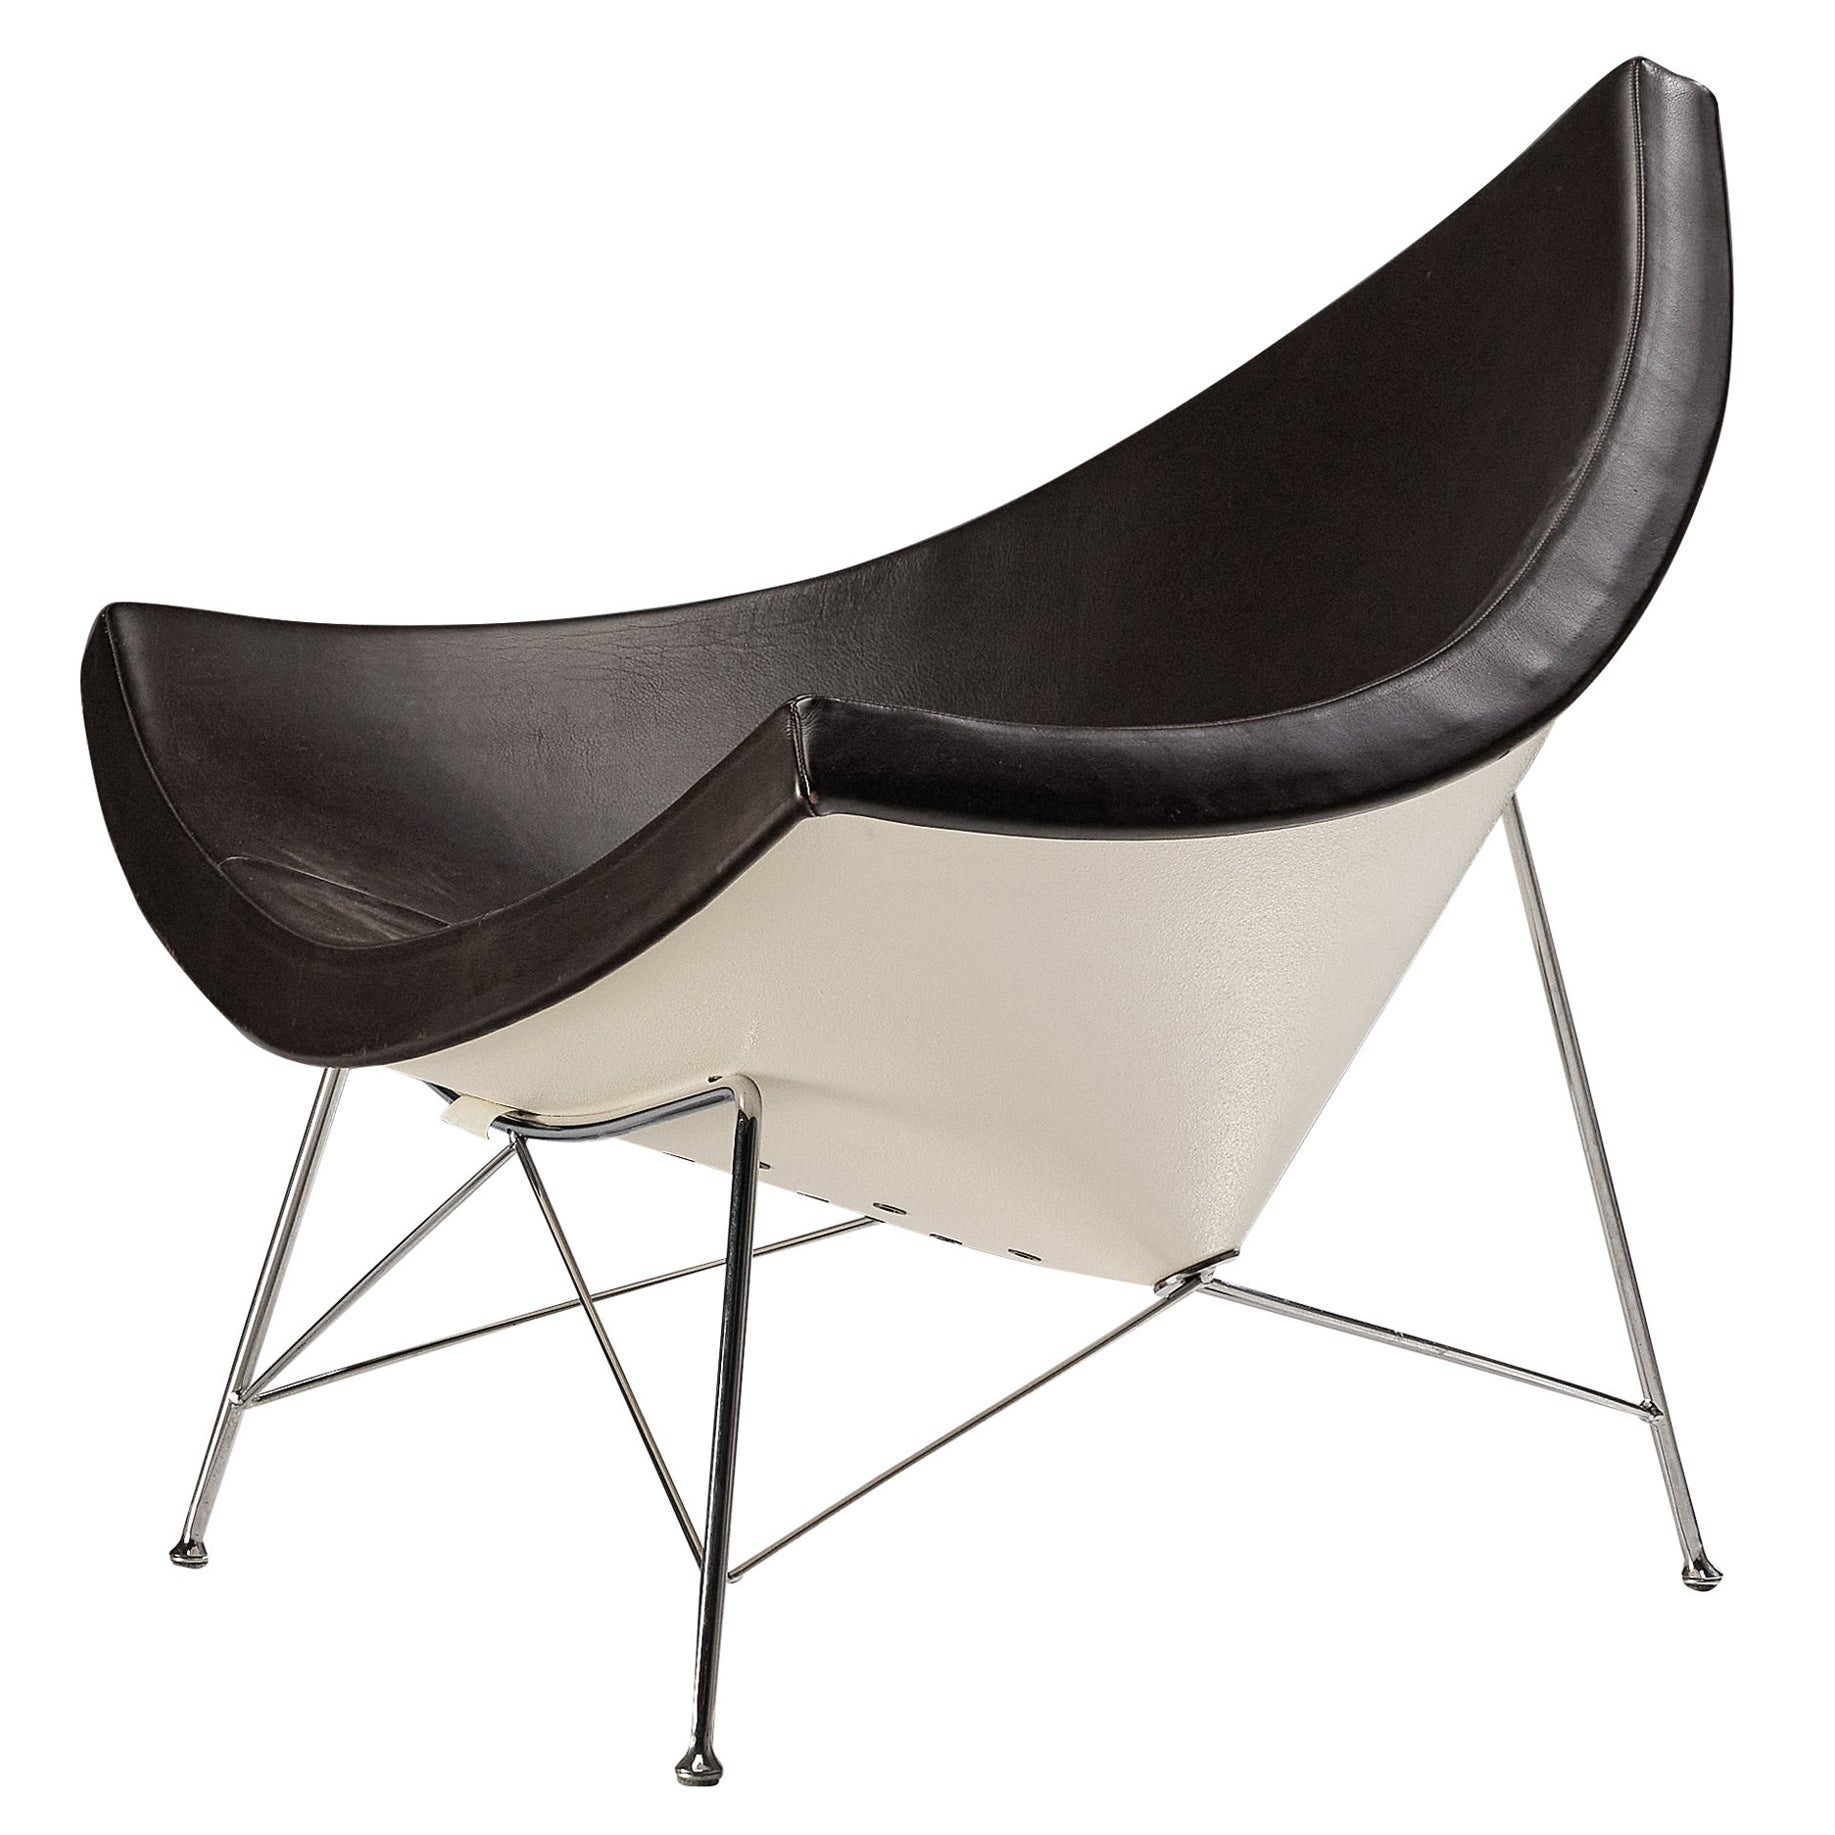 Der ikonische George Nelson 'Coconut' Lounge Chair